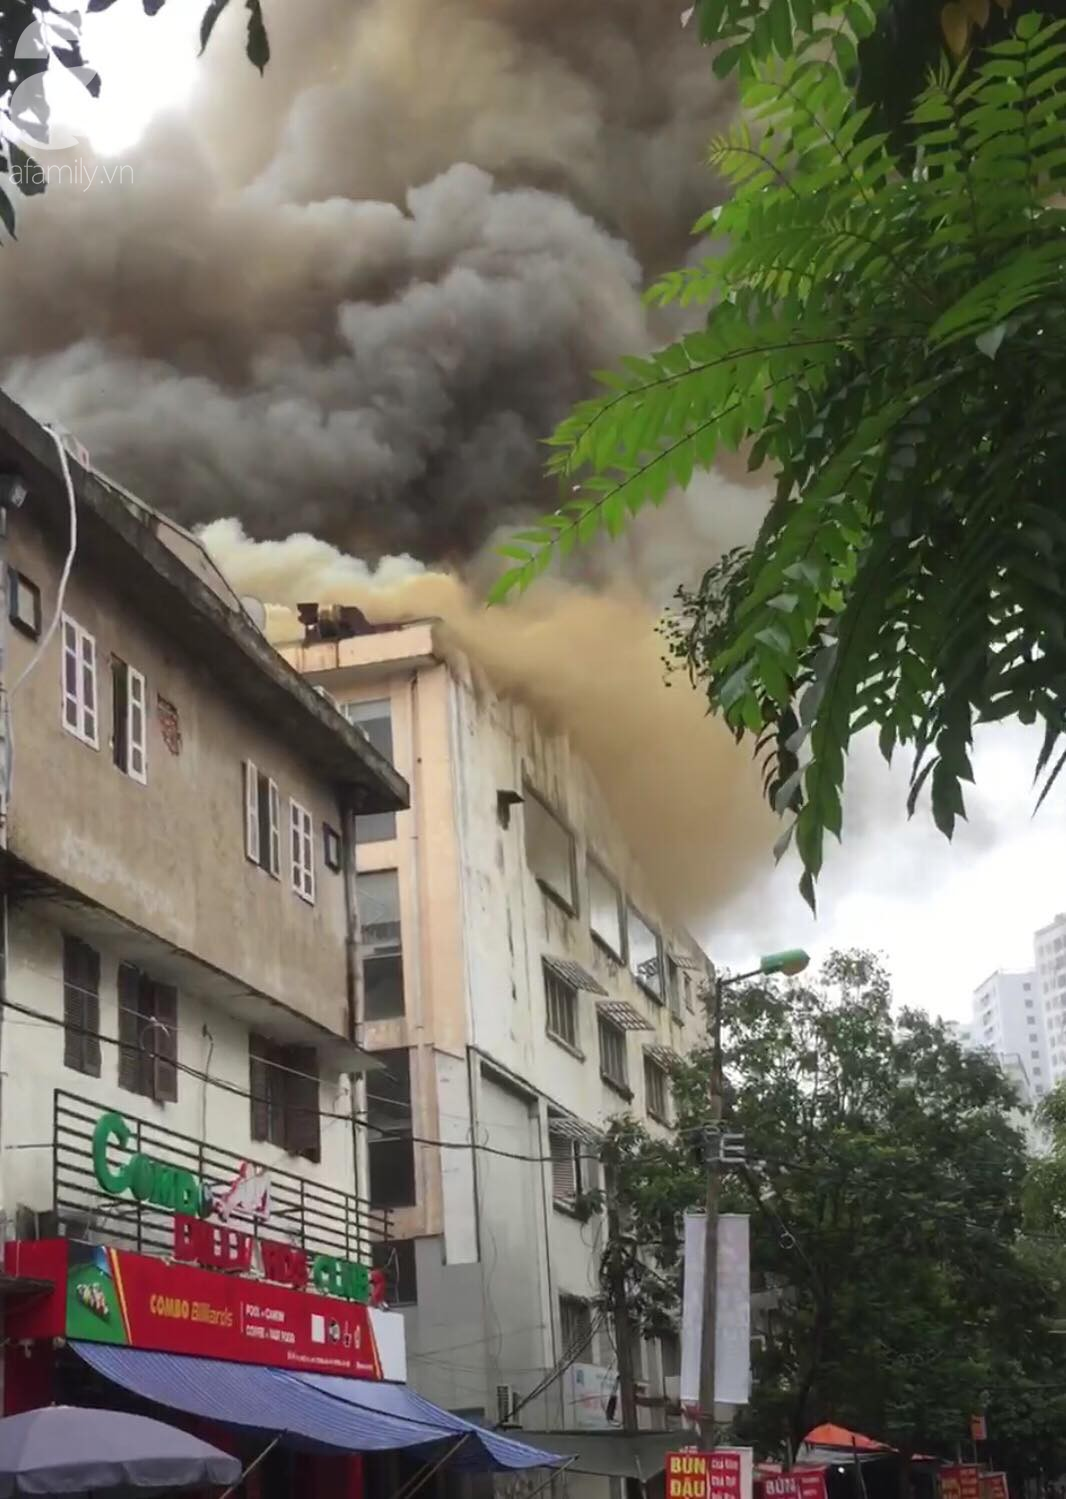 Hà Nội: Cháy lớn tại tầng thượng tòa nhà, nhiều người hốt hoảng bỏ chạy-1